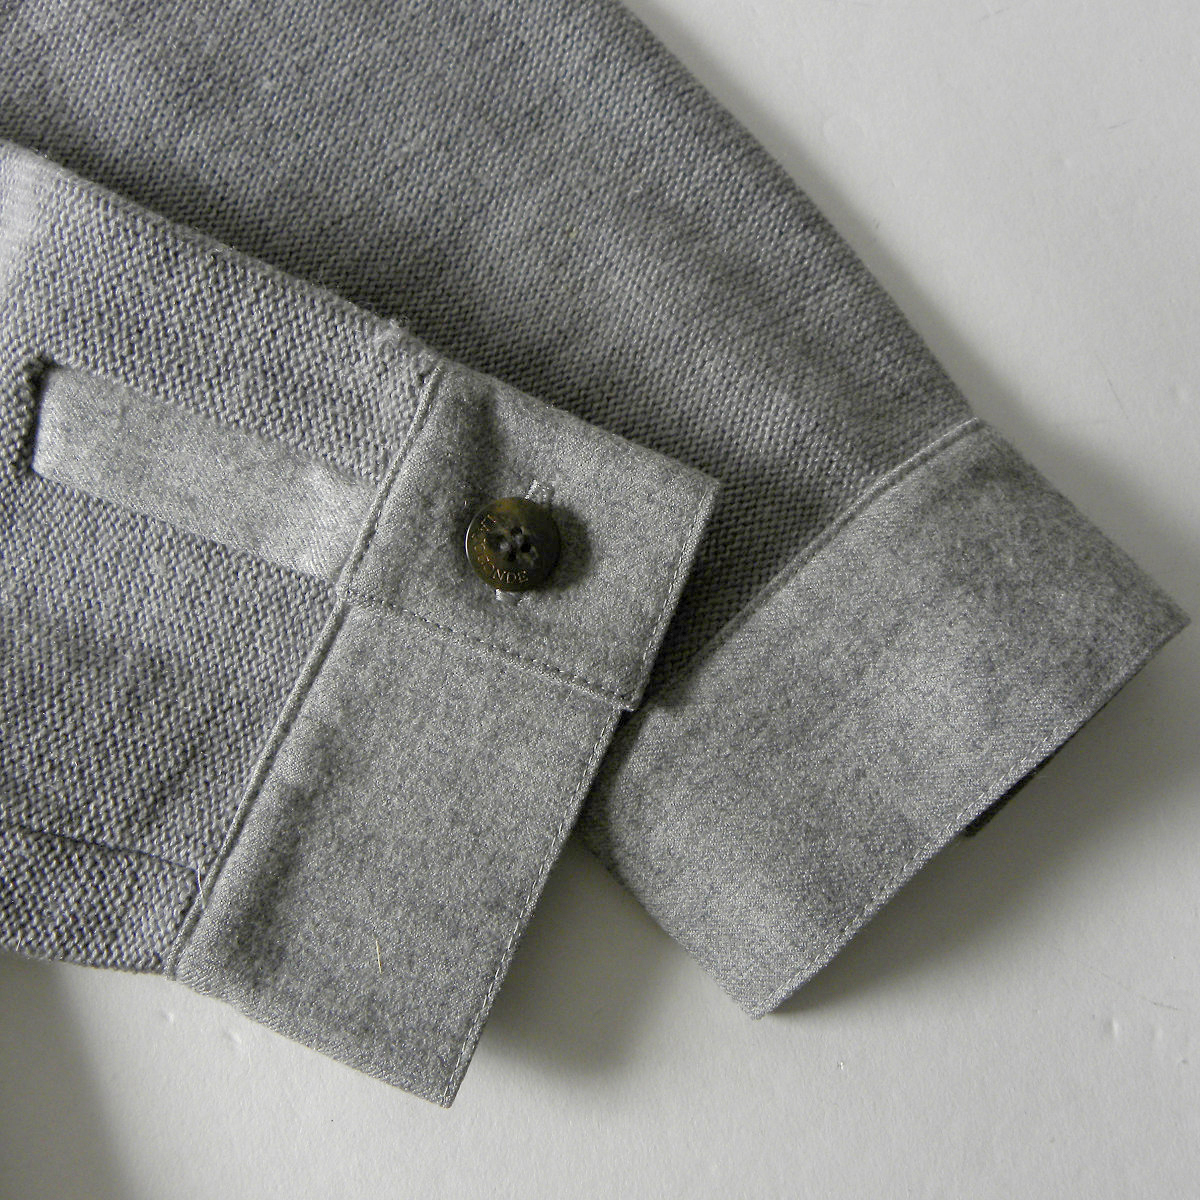 ラ ジョコンダ LA JOCONDE イタリア製糸使用 ウールニットジャケット 襟付きカーディガン 羽織り チクチク感軽減 グレー l1129-5_画像5